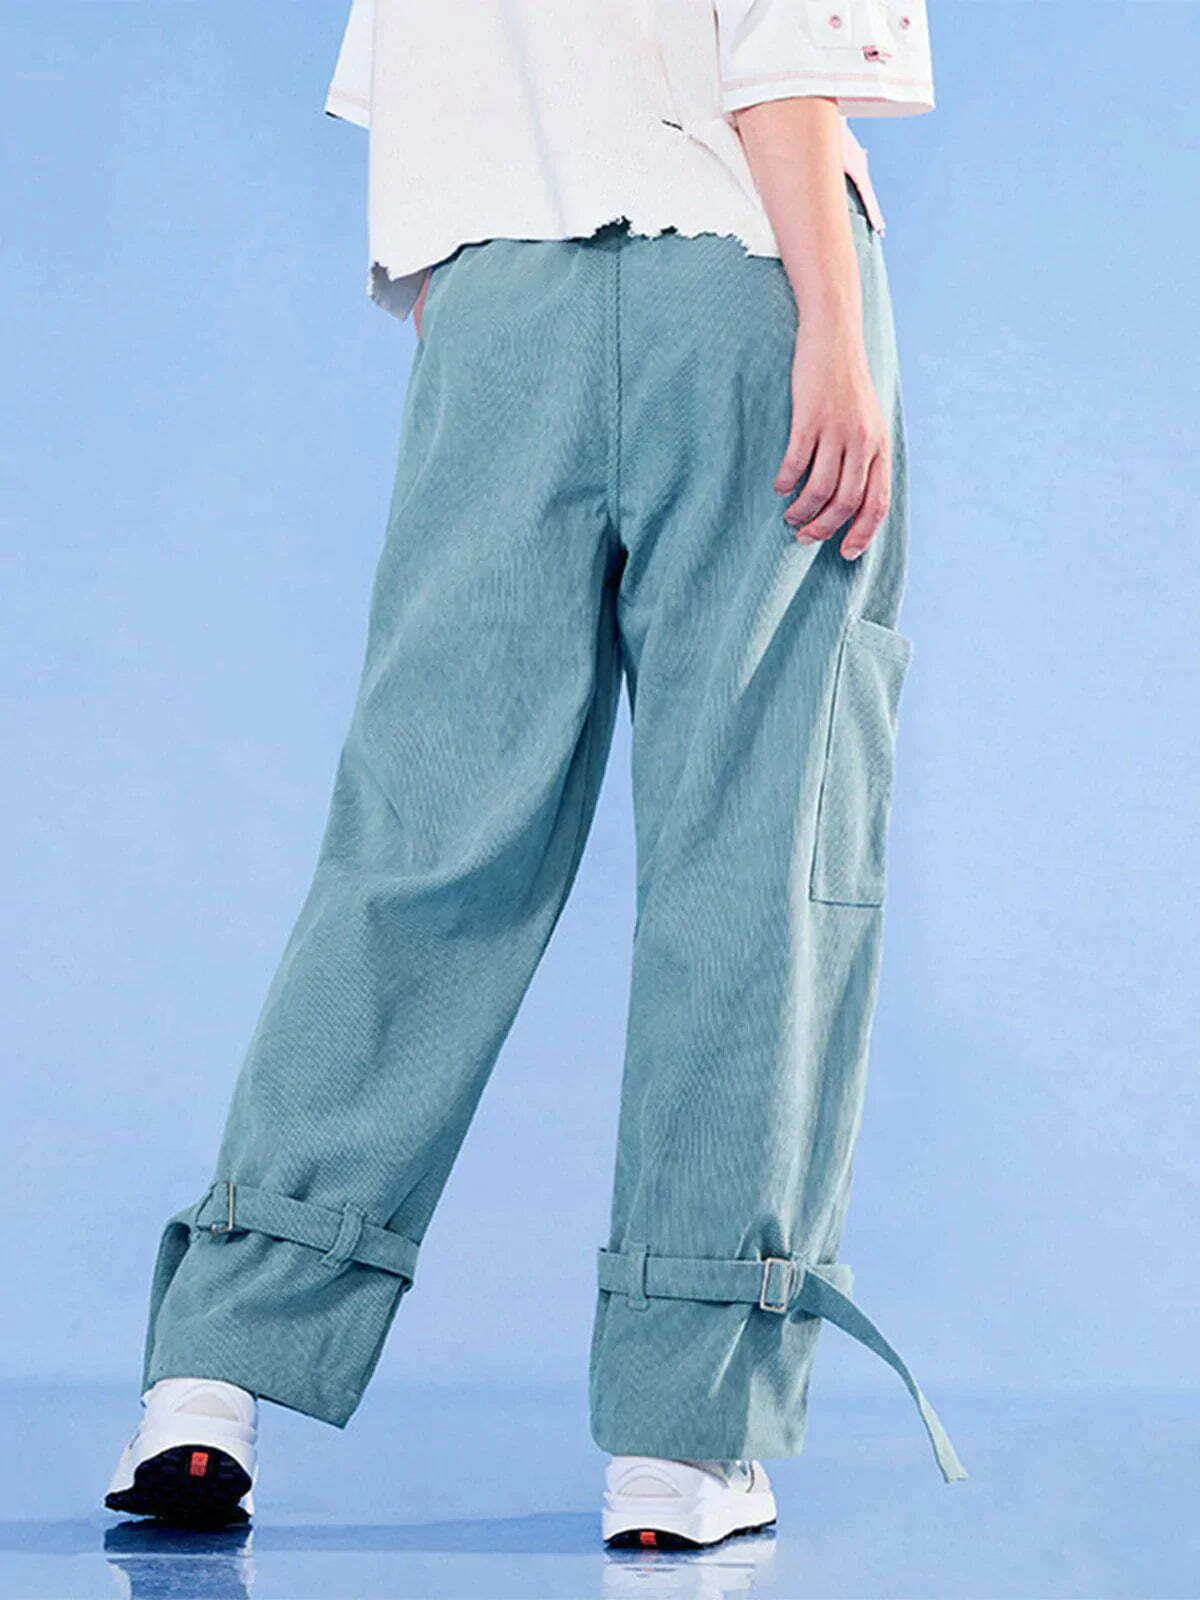 dimensional print leg straps pants edgy & vibrant streetwear 4048